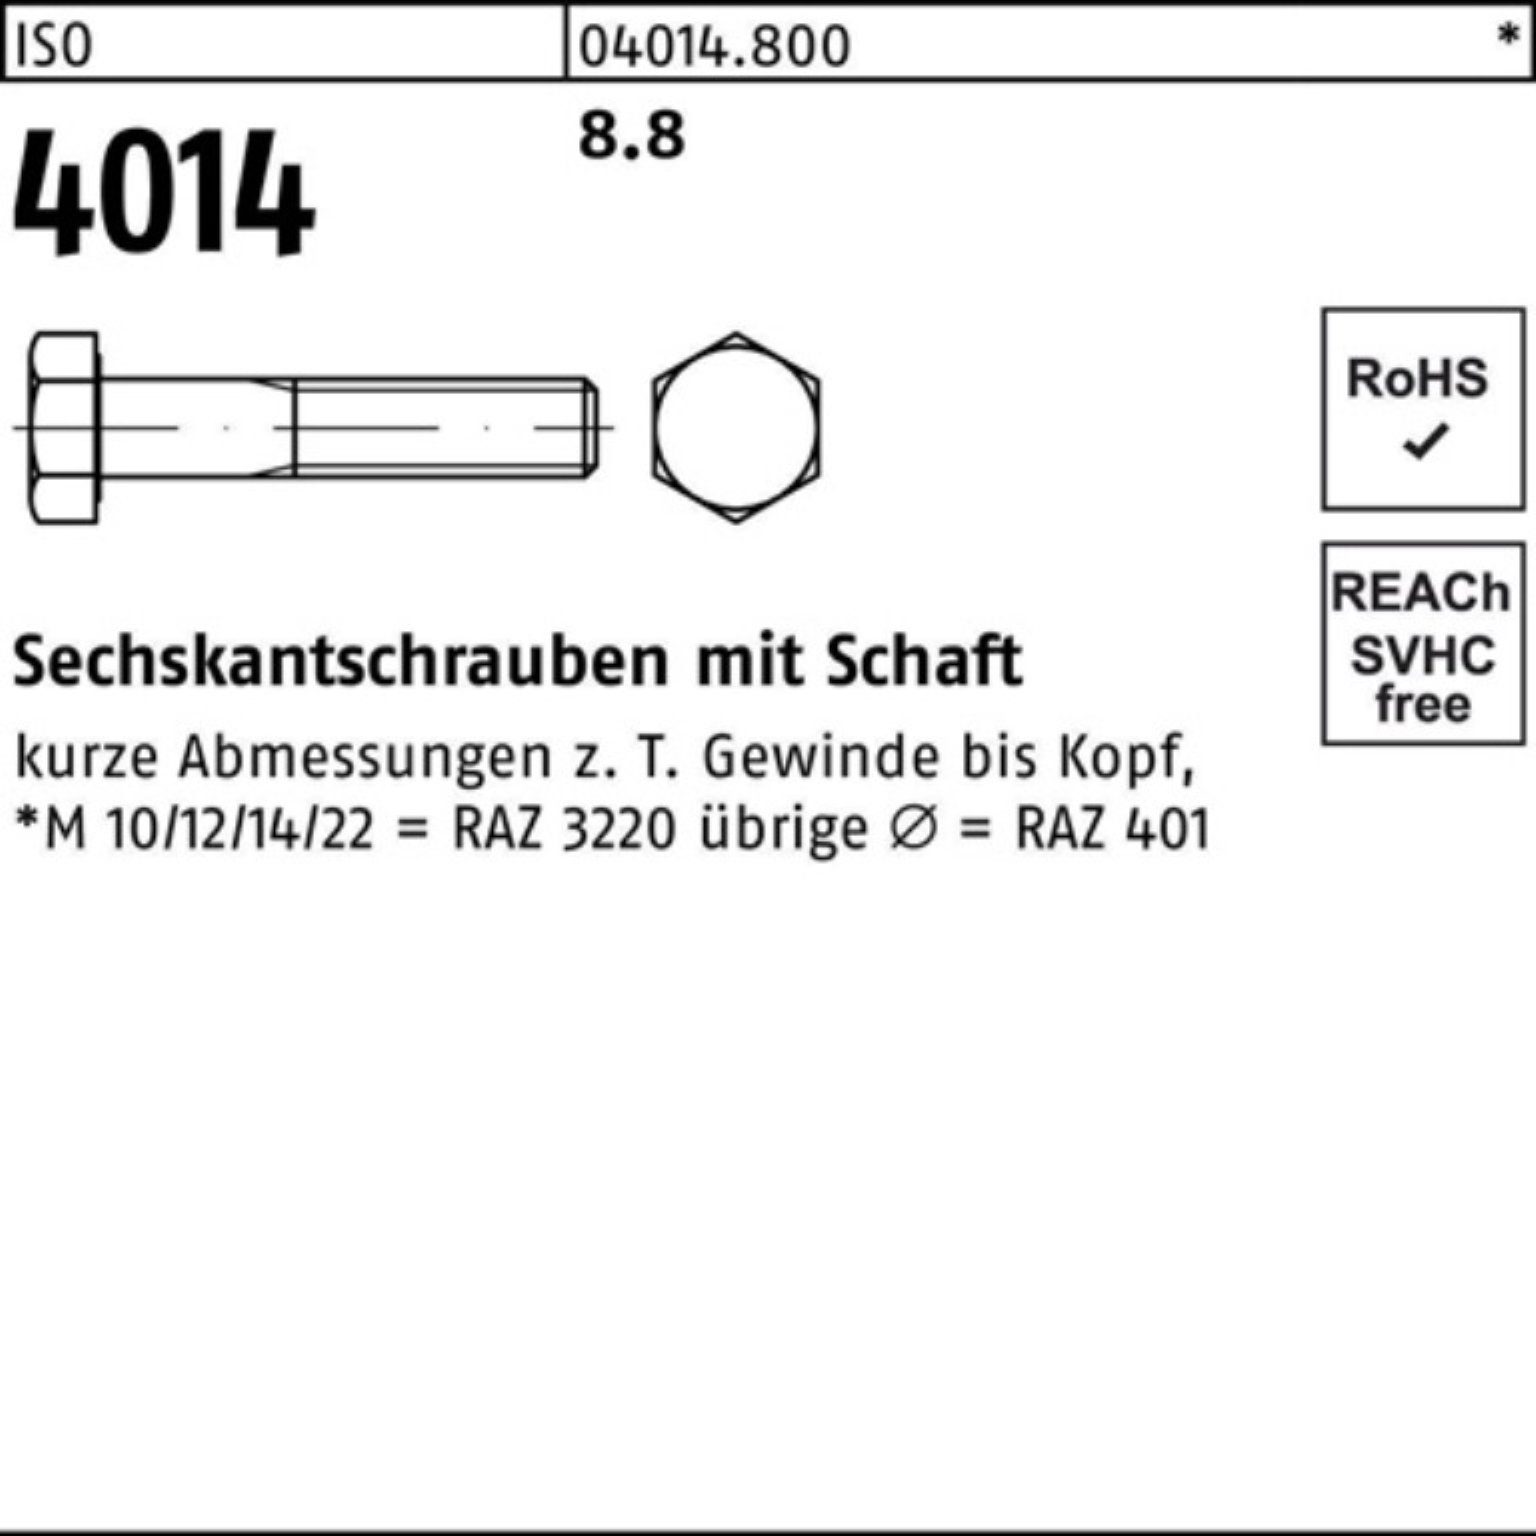 Bufab Sechskantschraube 100er Pack Sechskantschraube Schaft Stück 1 4014 8.8 280 M33x ISO ISO